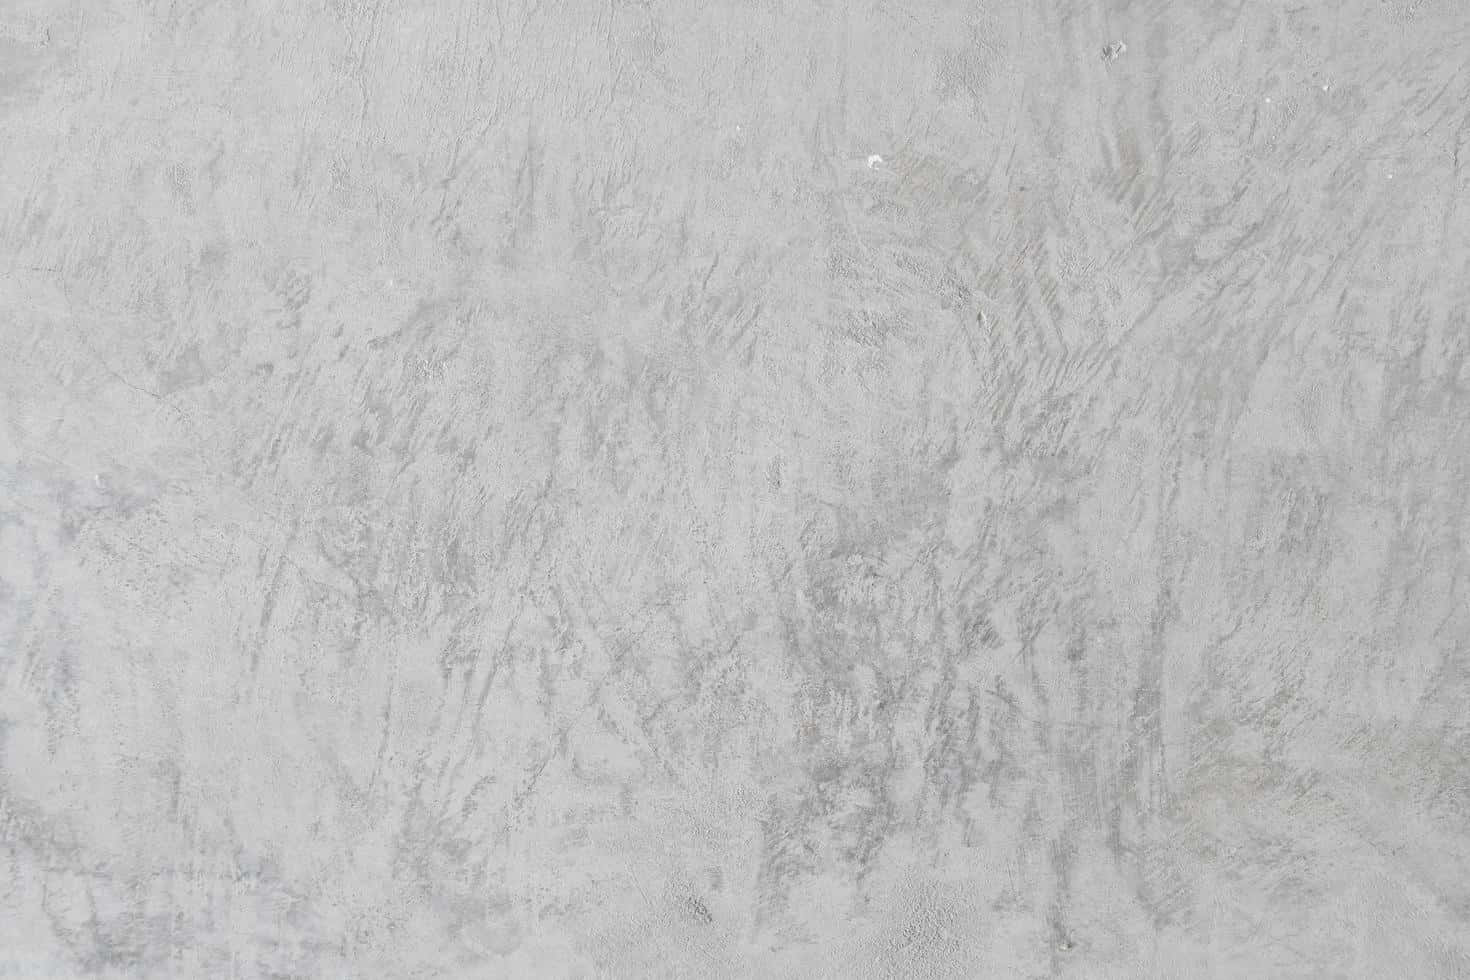 White Decorative Concrete Texture Picture